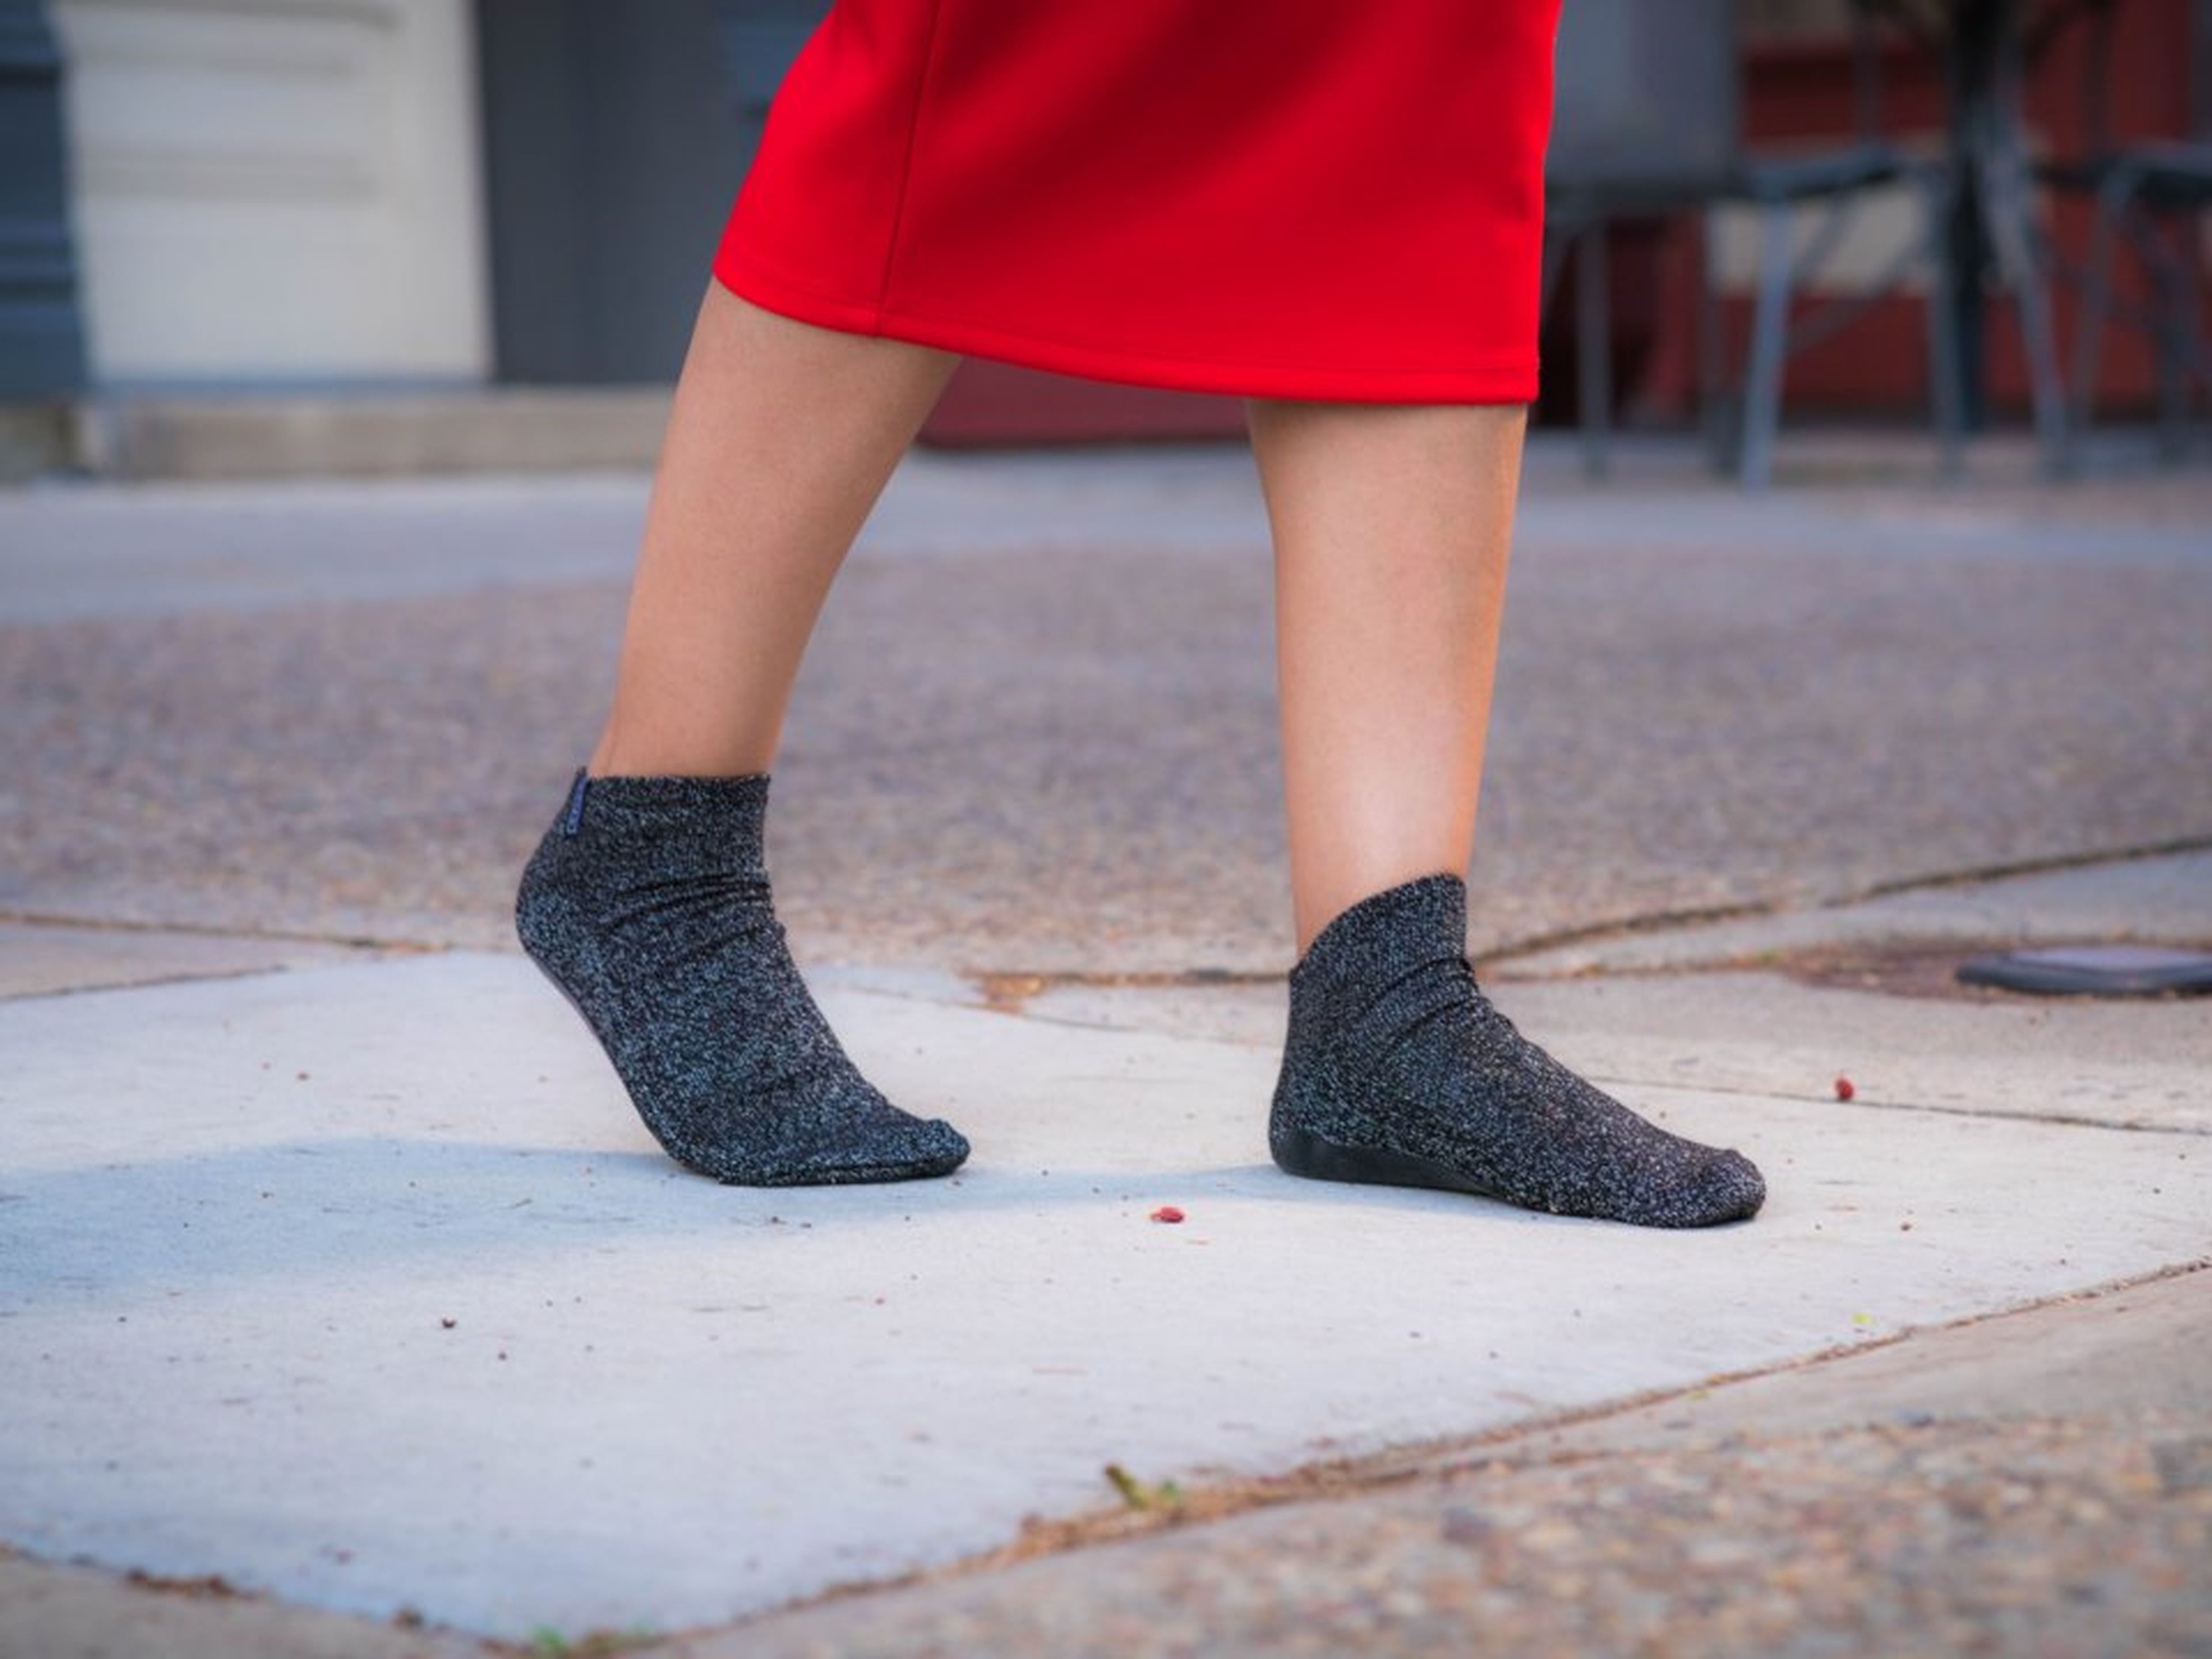 eterno llamada Completamente seco Aftersocks: calcetines para andar descalzo por la calle, sin zapatos |  Business Insider España